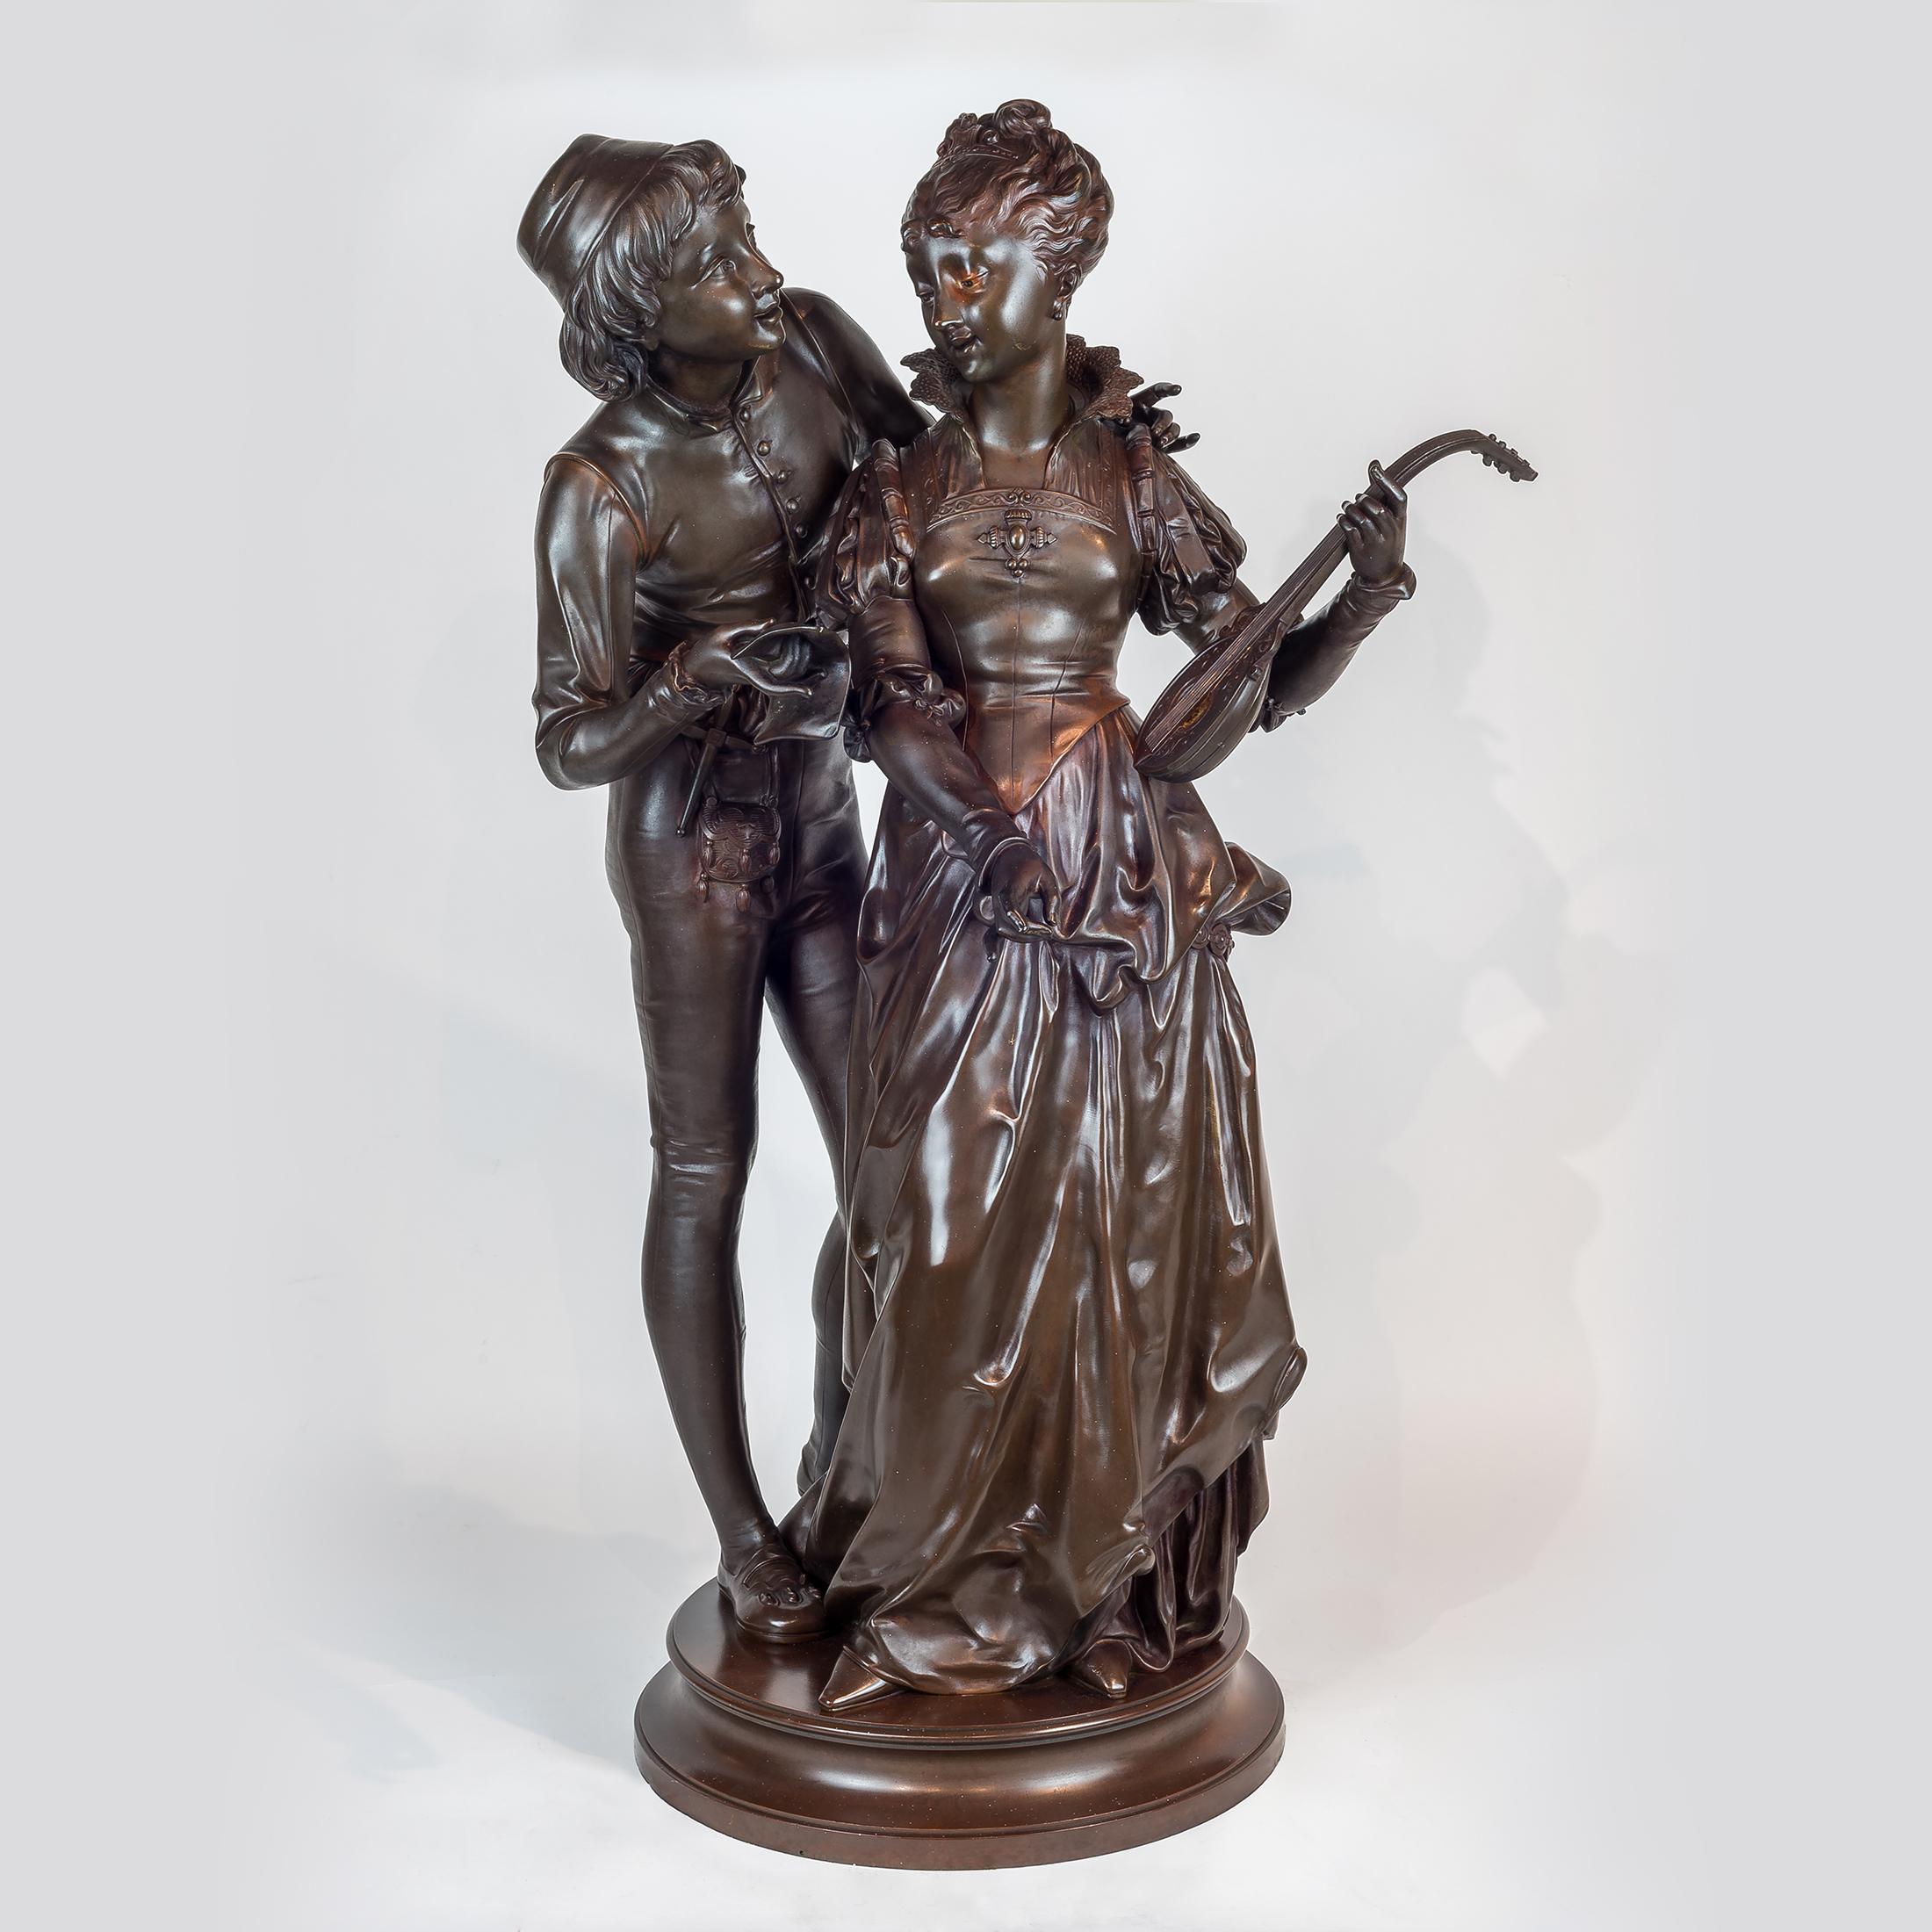 Figurative Sculpture Vincent Desire Faure de Brousse - Sculpture en bronze de deux amants